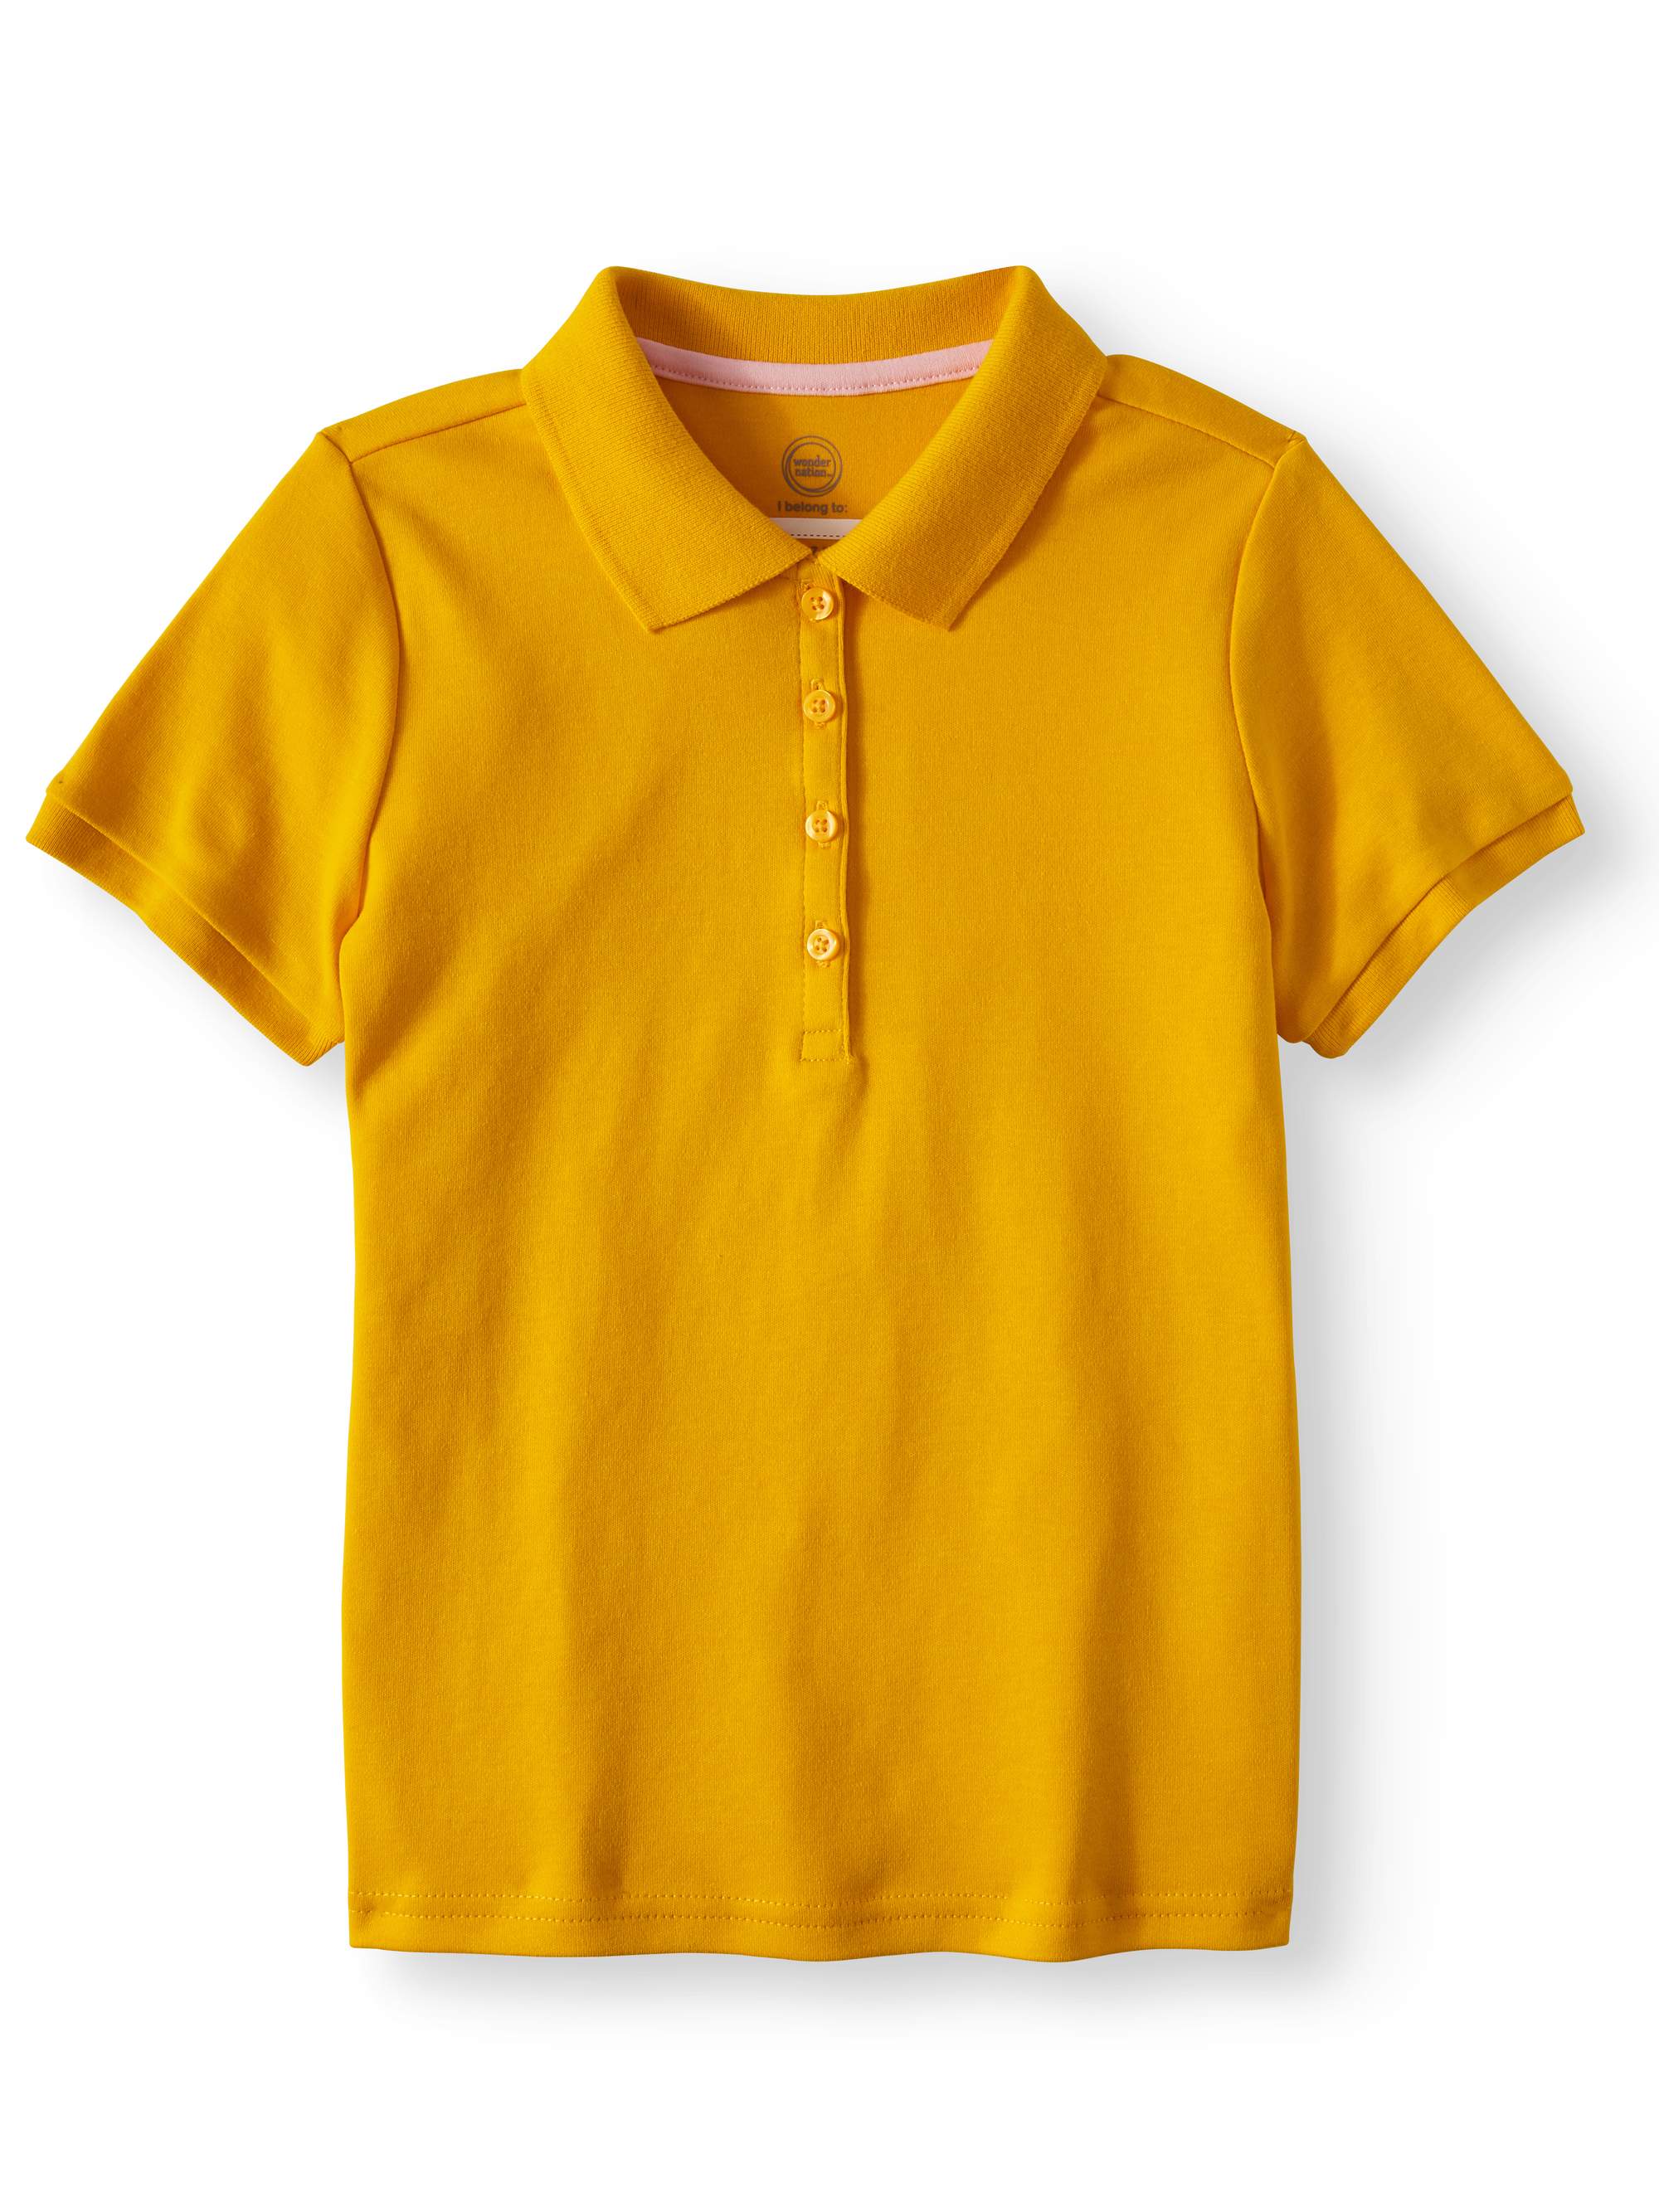 Wonder Nation Girls School Uniform Short Sleeve Interlock Polo Shirt, 2-Pack Value Bundle, Sizes 4-18 - image 2 of 3